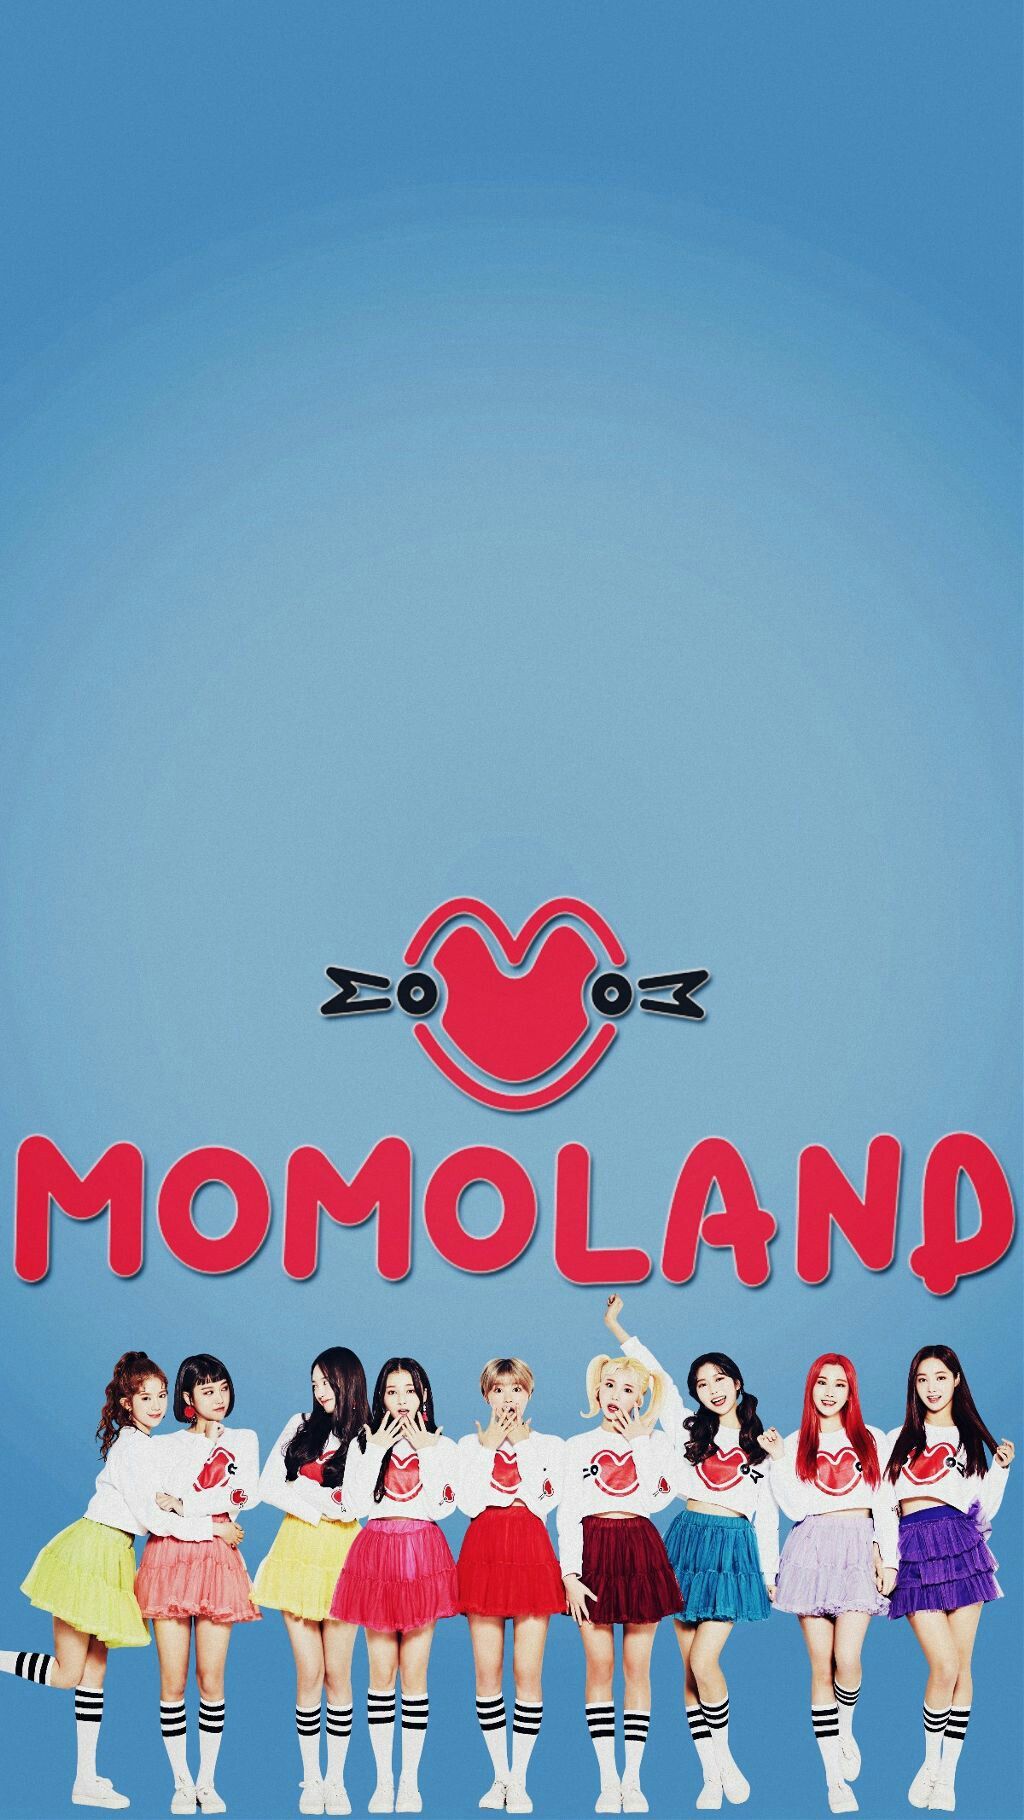 Momoland ideas kpop girls kpop girl groups girl group